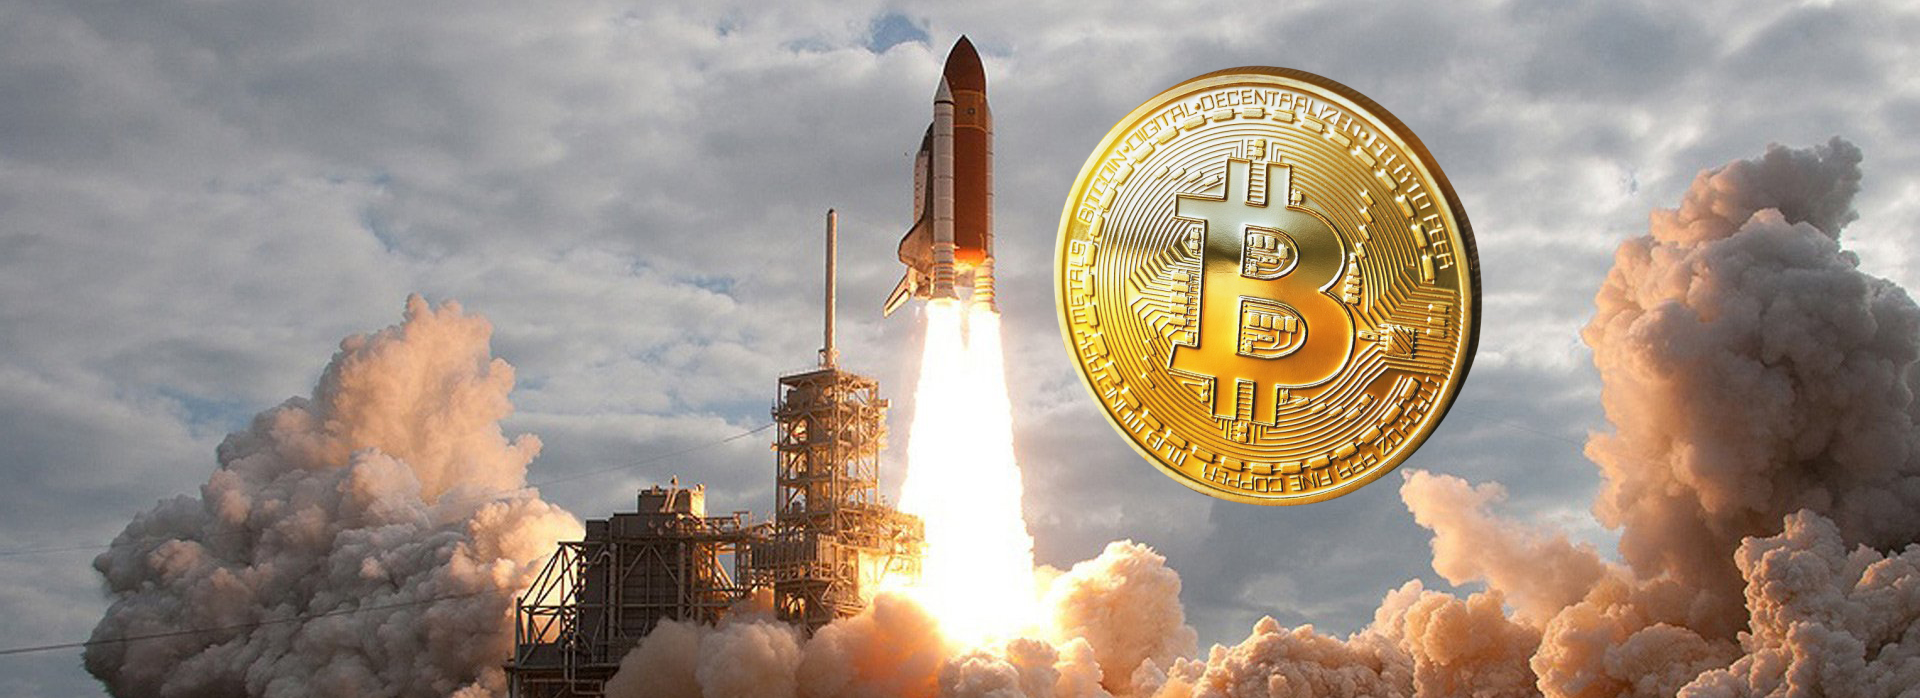 Обзор рынка криптовалют - Биткоин может "взлететь на Луну"